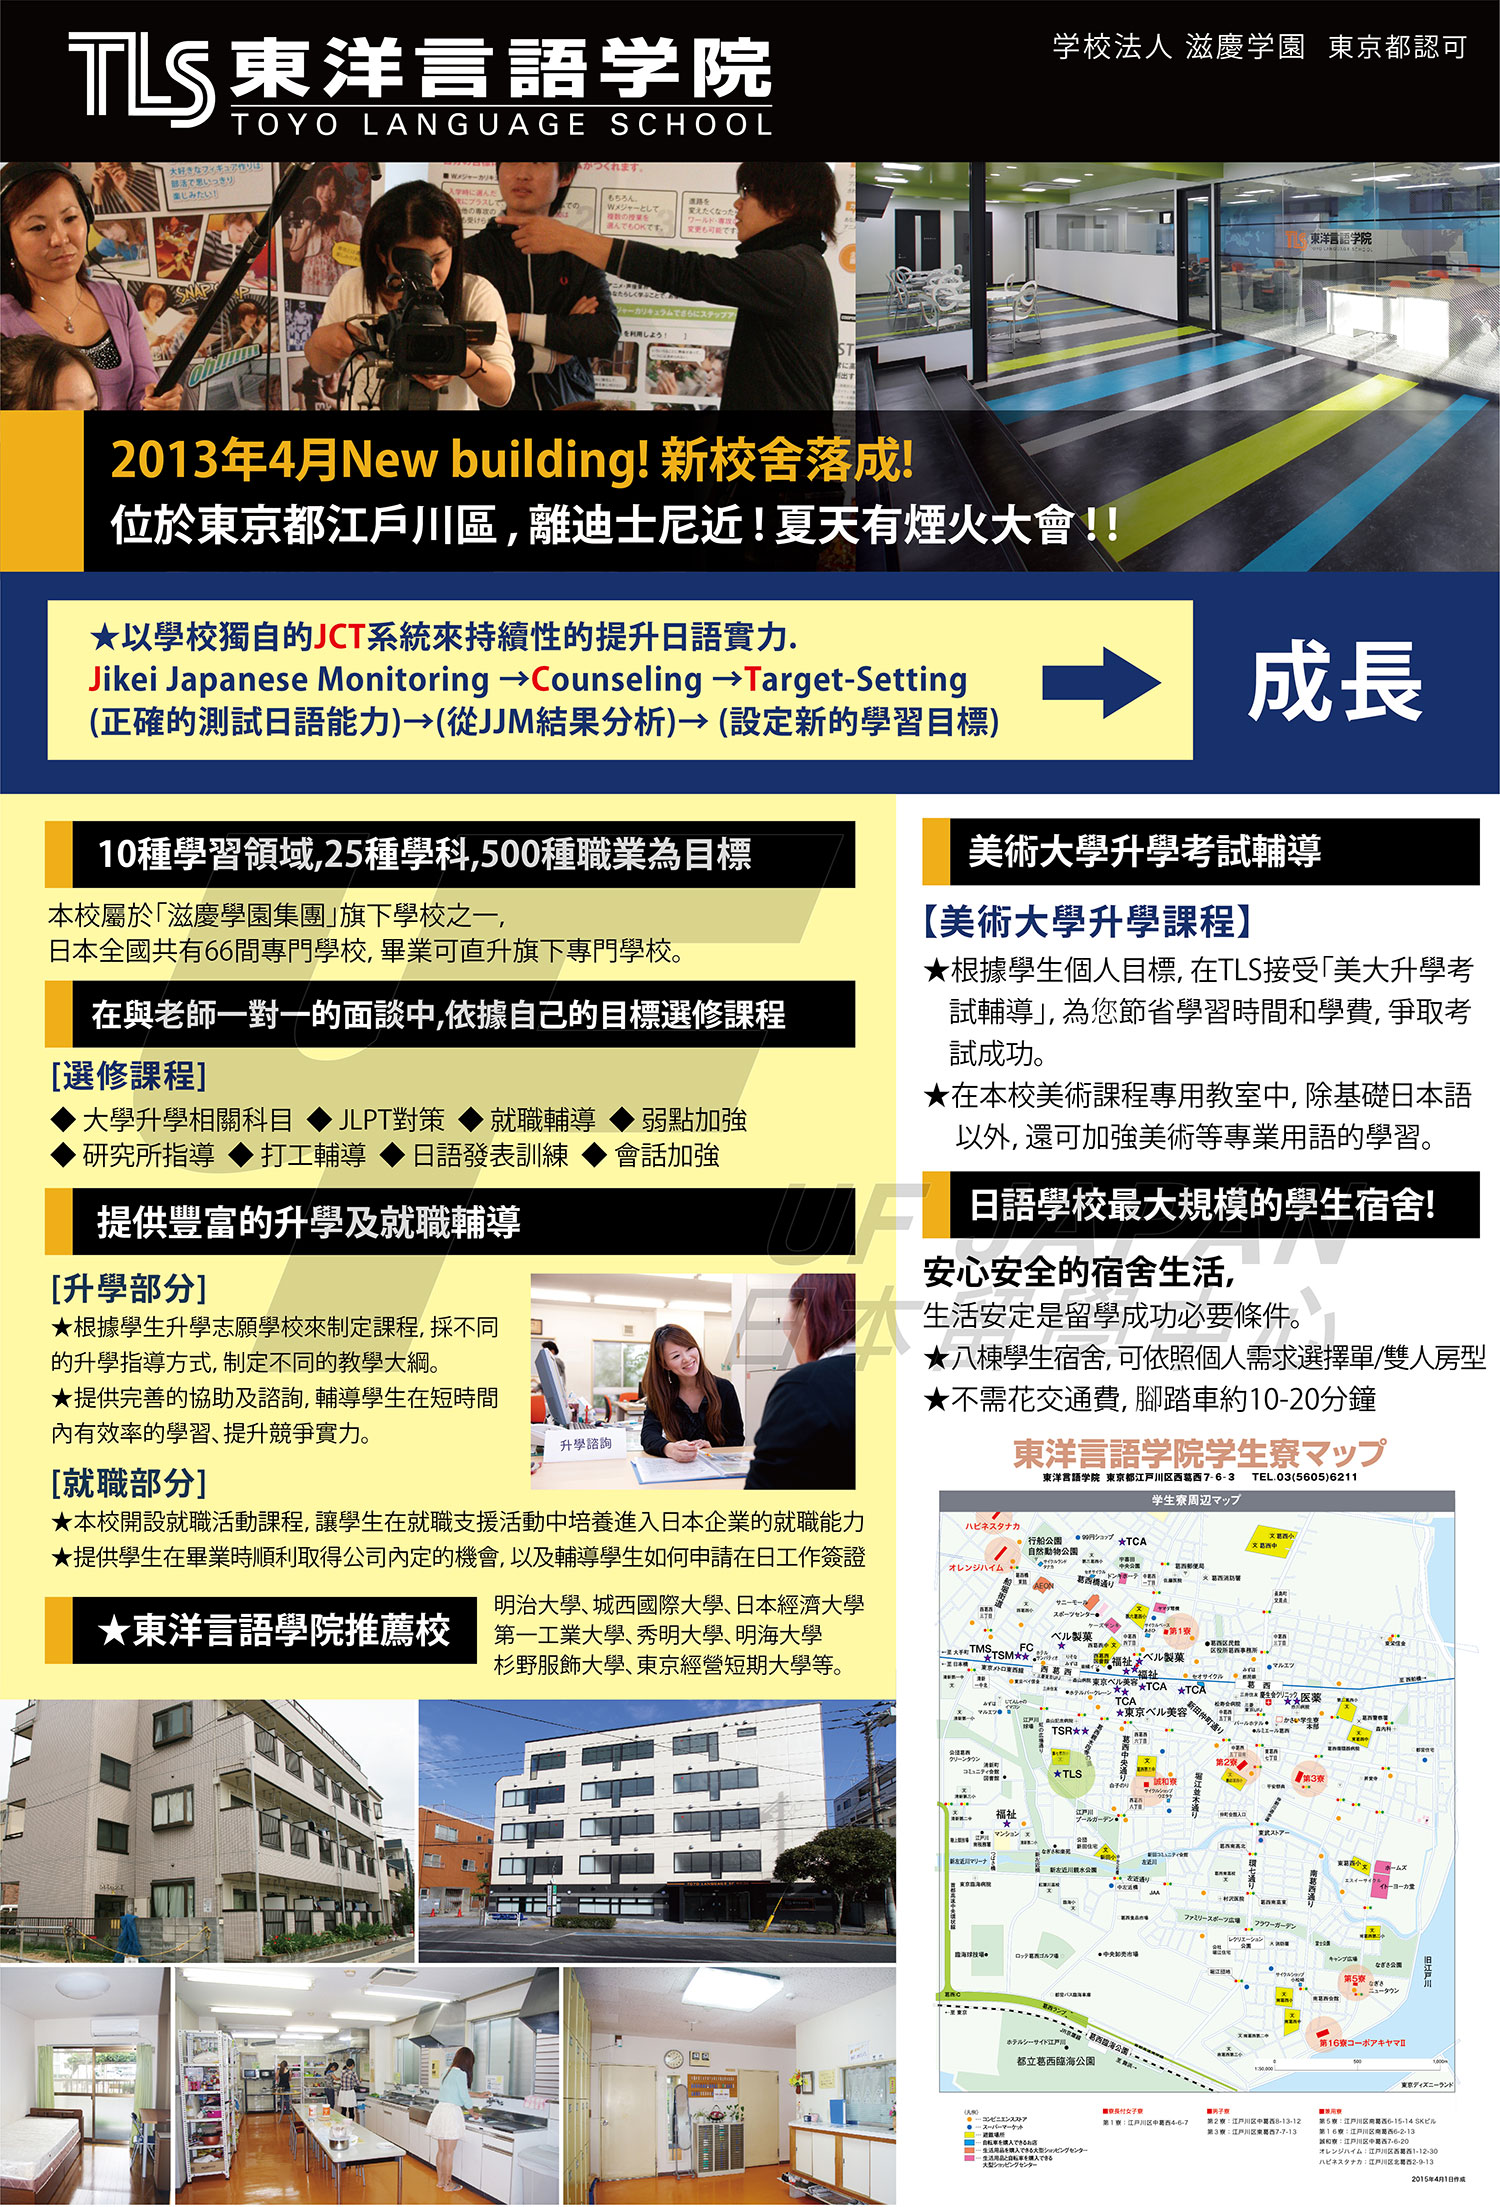 2016日本留學展參展單位-東洋言語學院